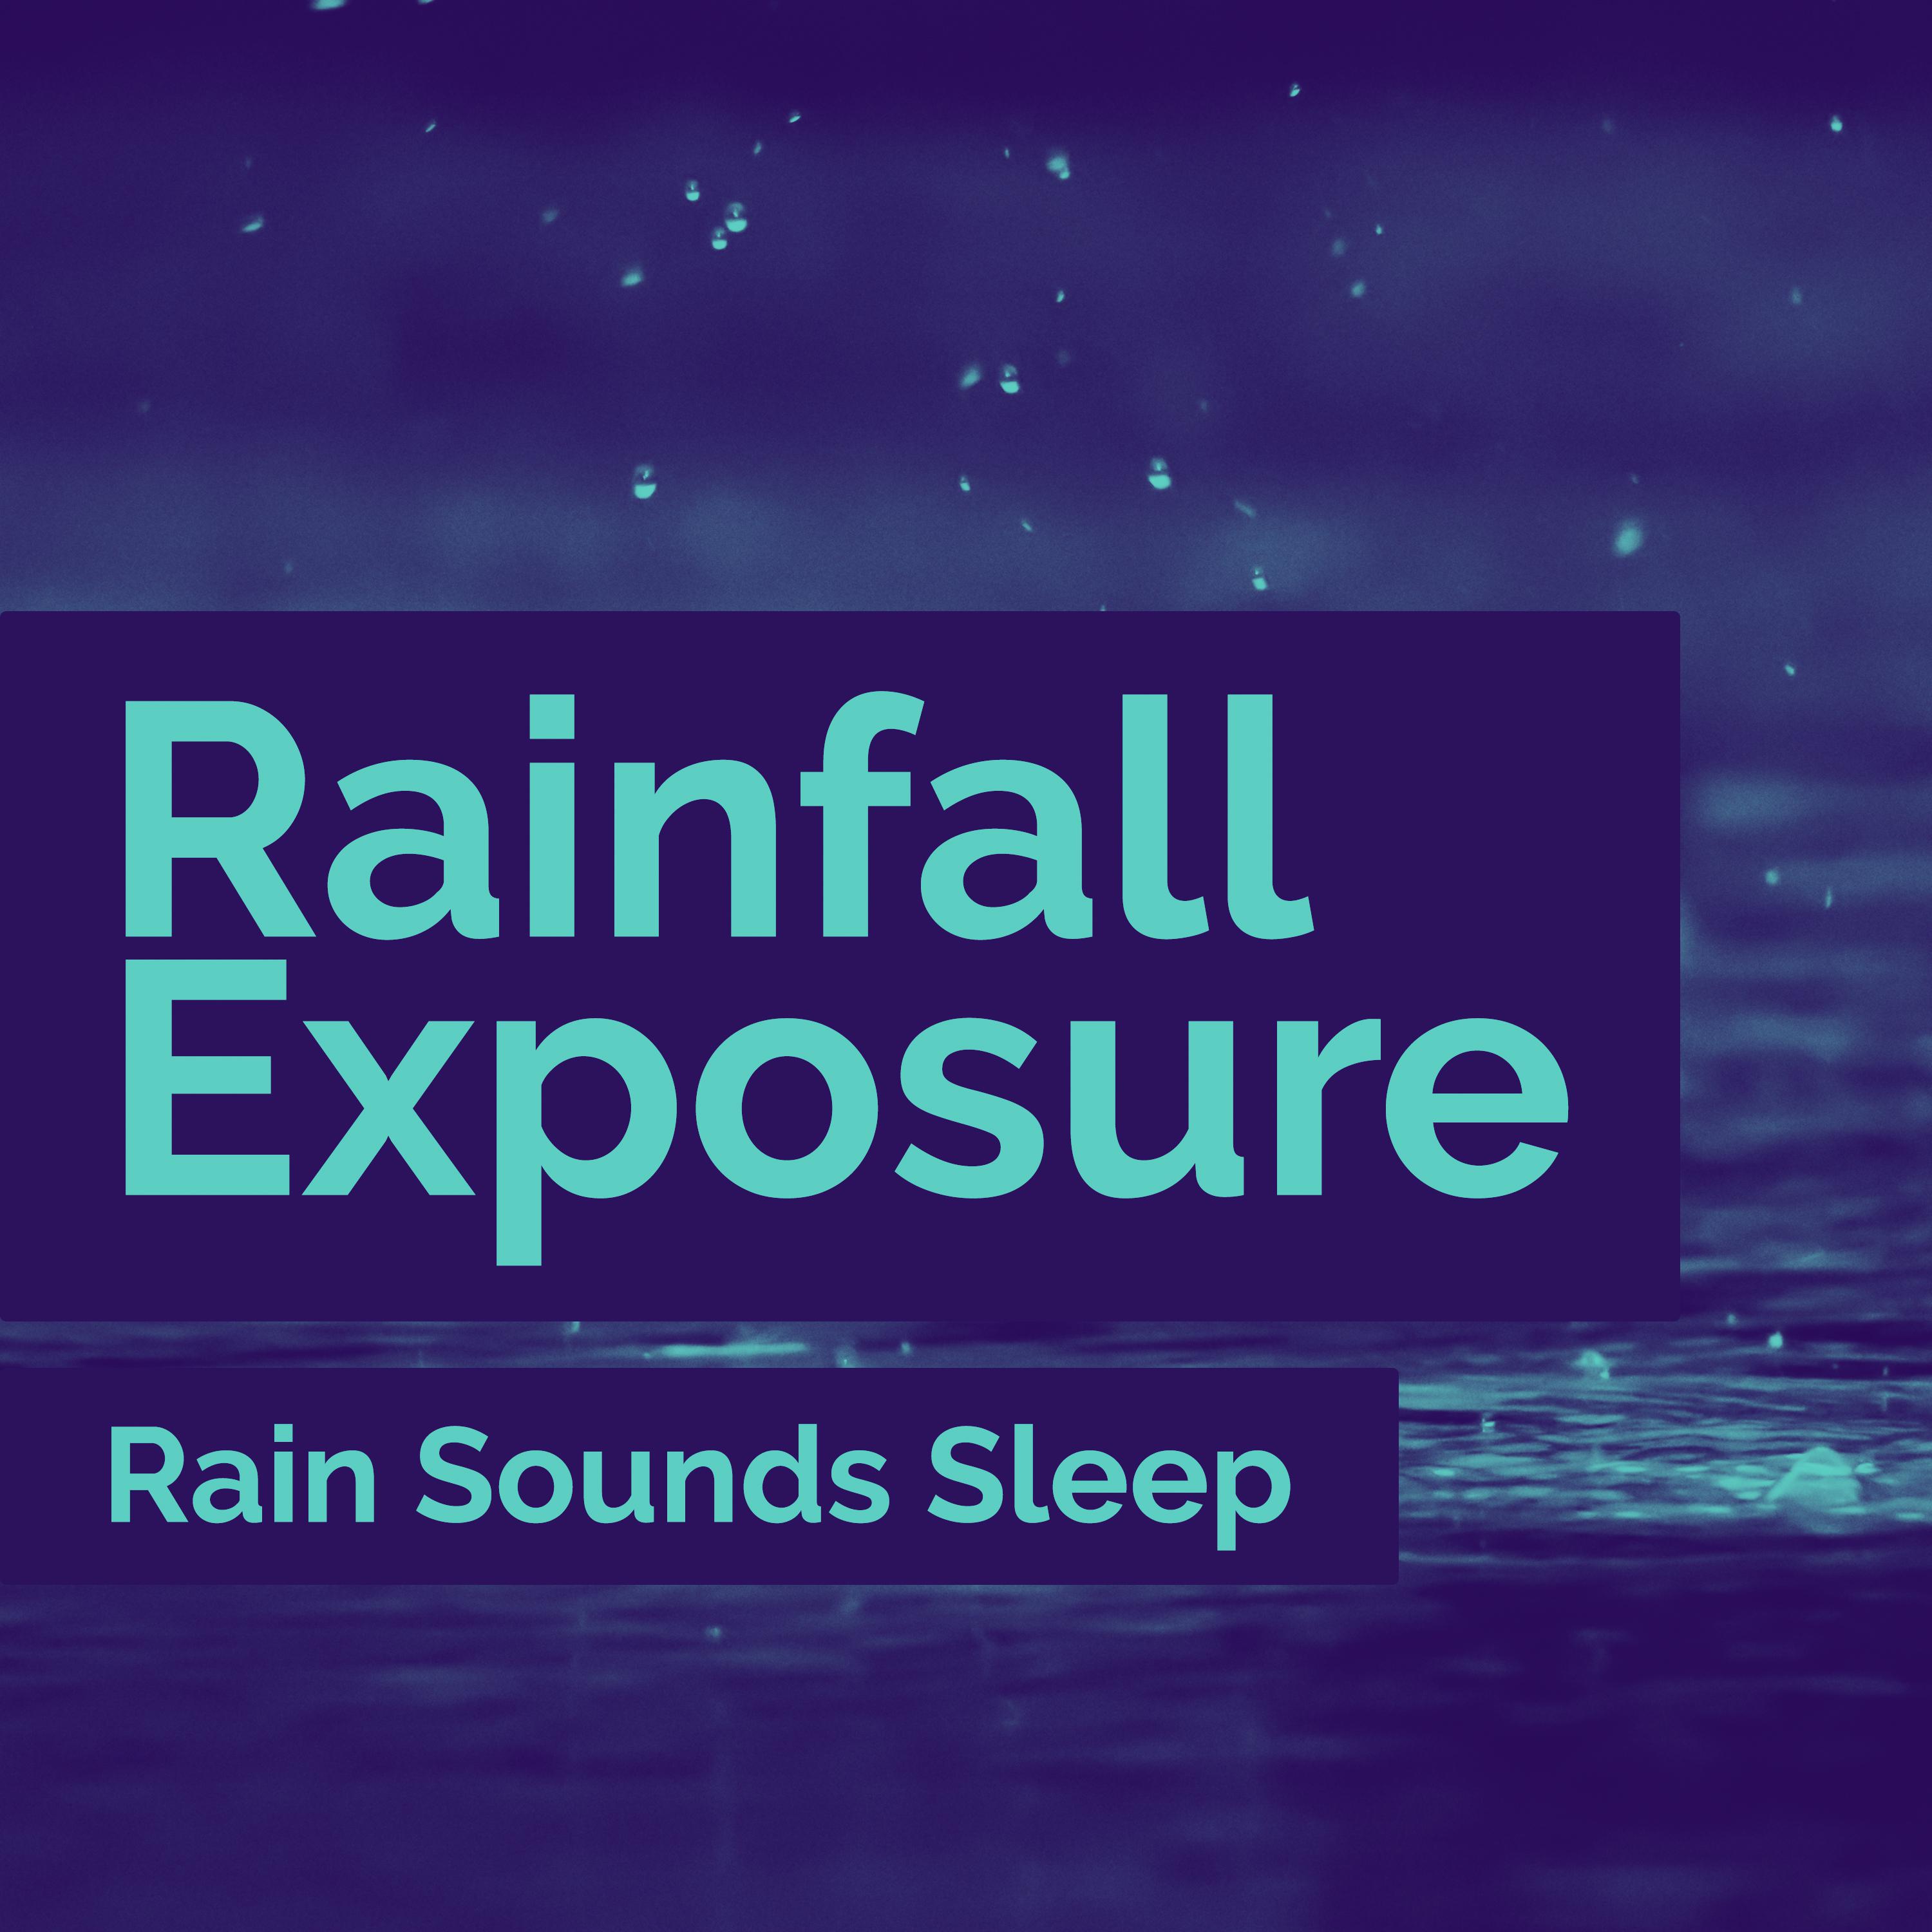 Rainfall Exposure